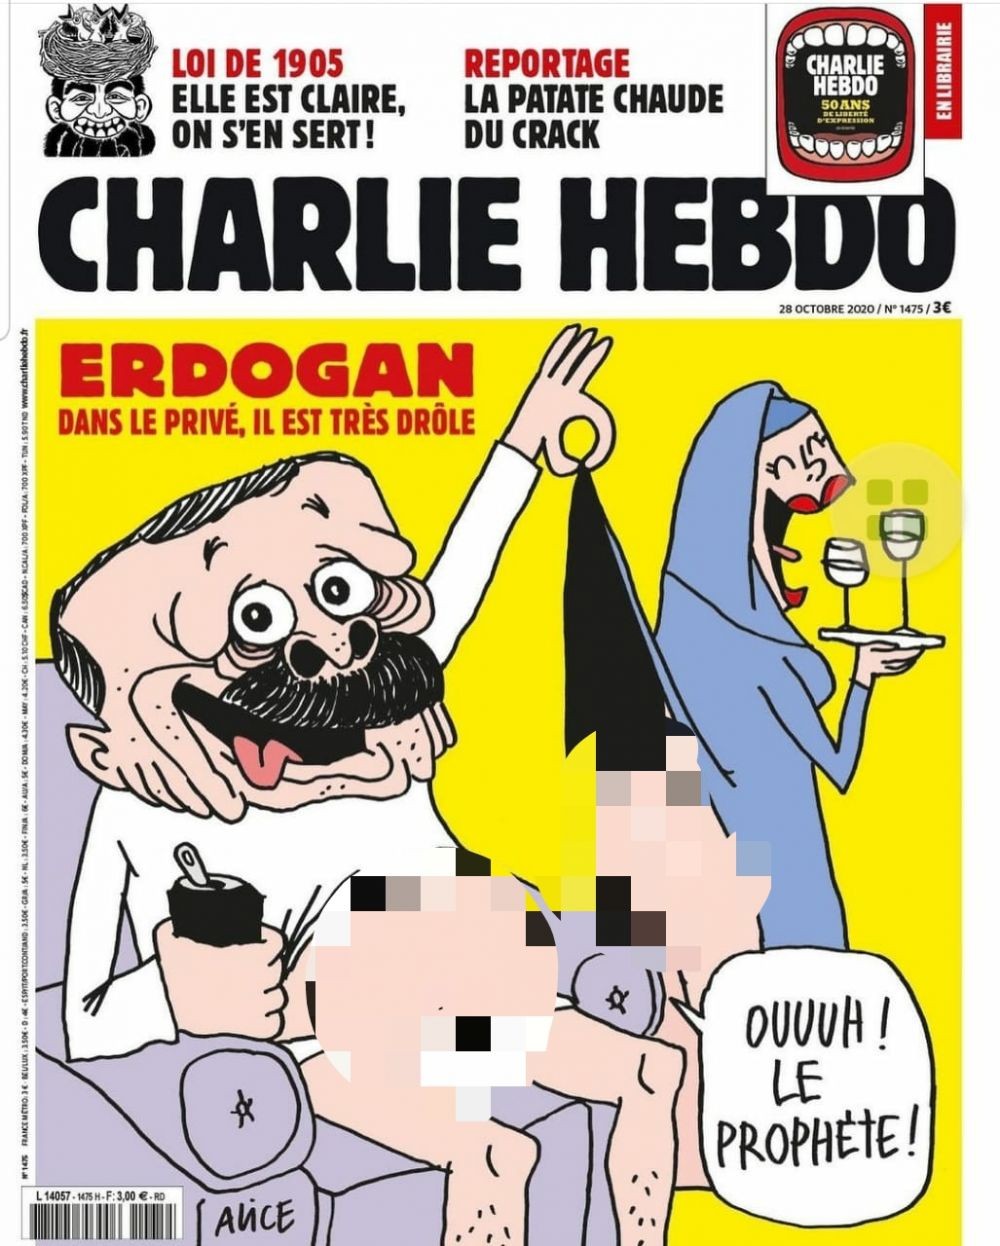 Terbitkan Karikator Erdogan, Ini 5 Kontroversi Majalah Charlie Hebdo